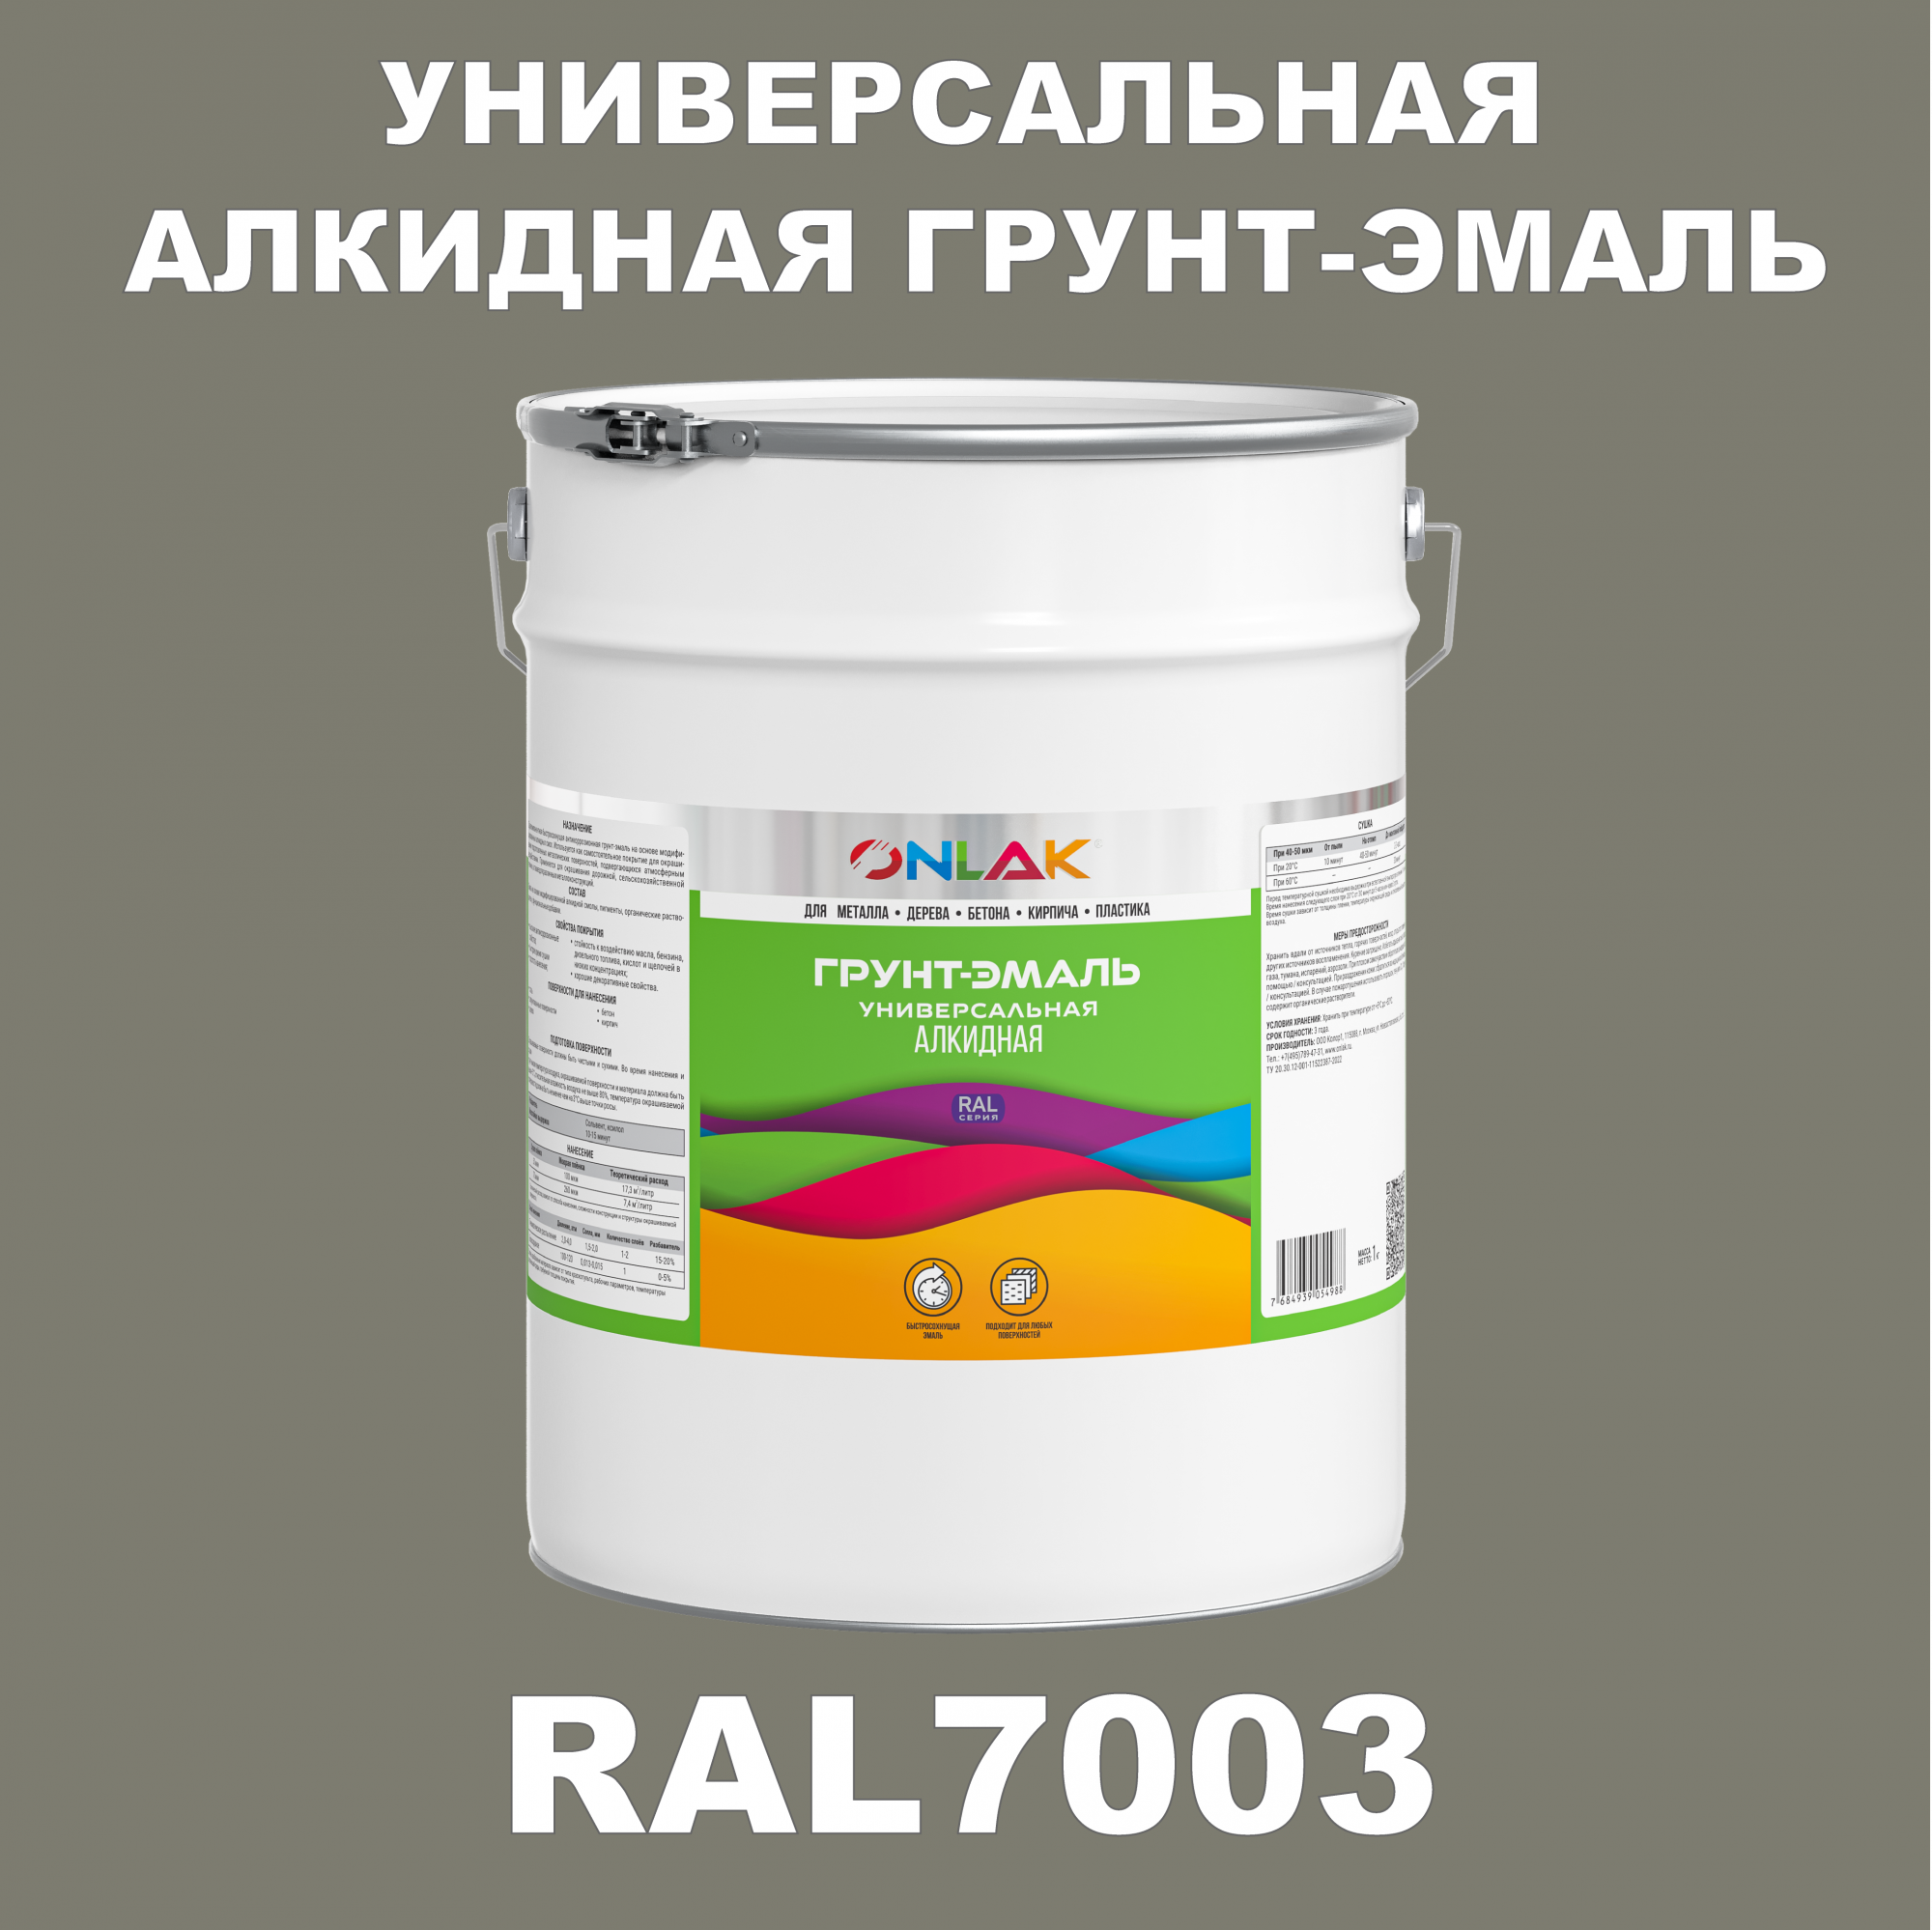 Грунт-эмаль ONLAK 1К RAL7003 антикоррозионная алкидная по металлу по ржавчине 20 кг